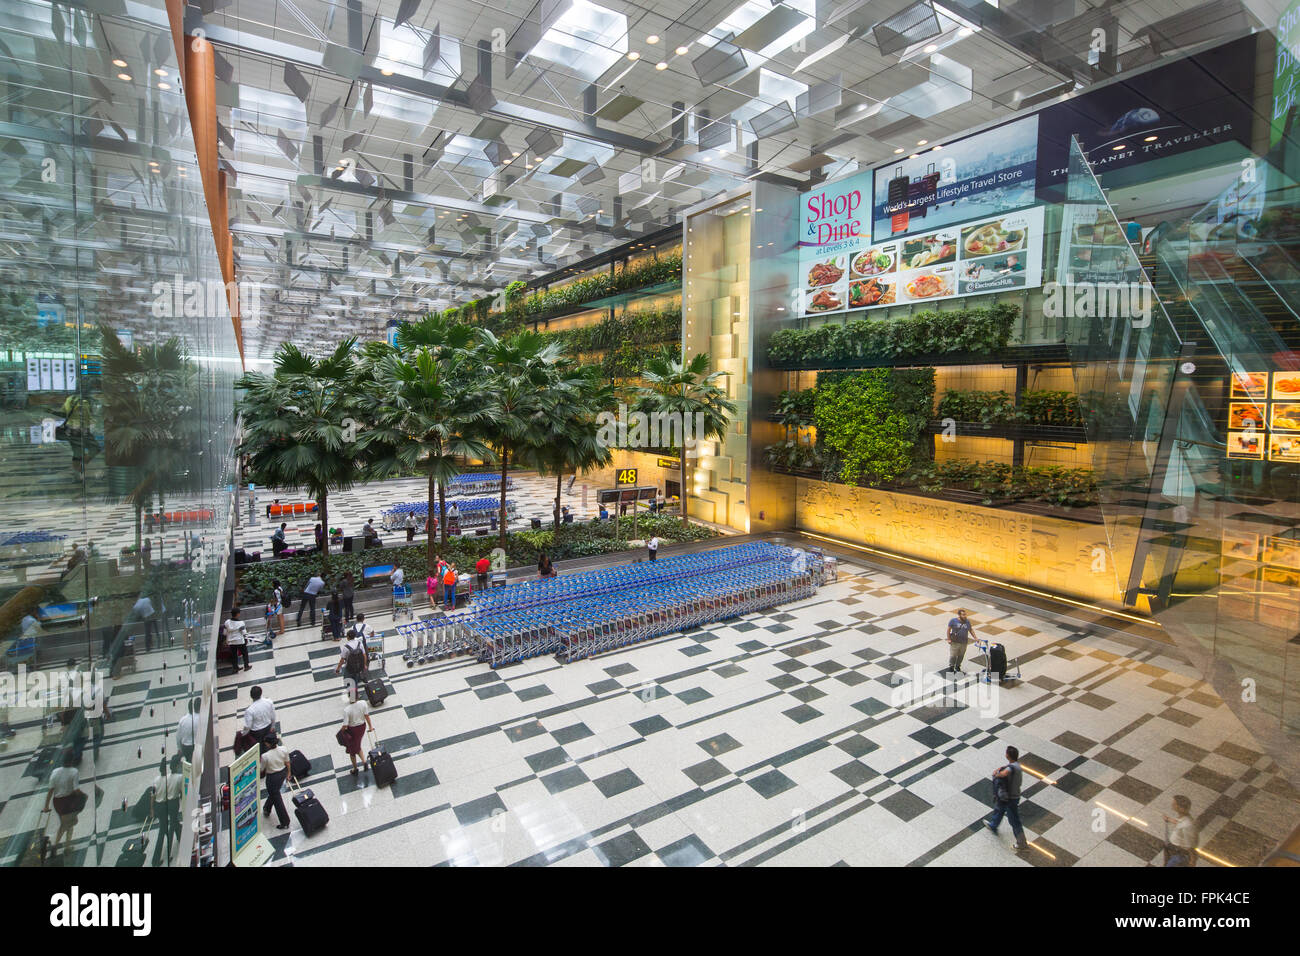 Taylor Swift a dit un jour que l'aéroport de Changi est une forêt. Aéroport de Changi terminal 3. Singapour. Banque D'Images